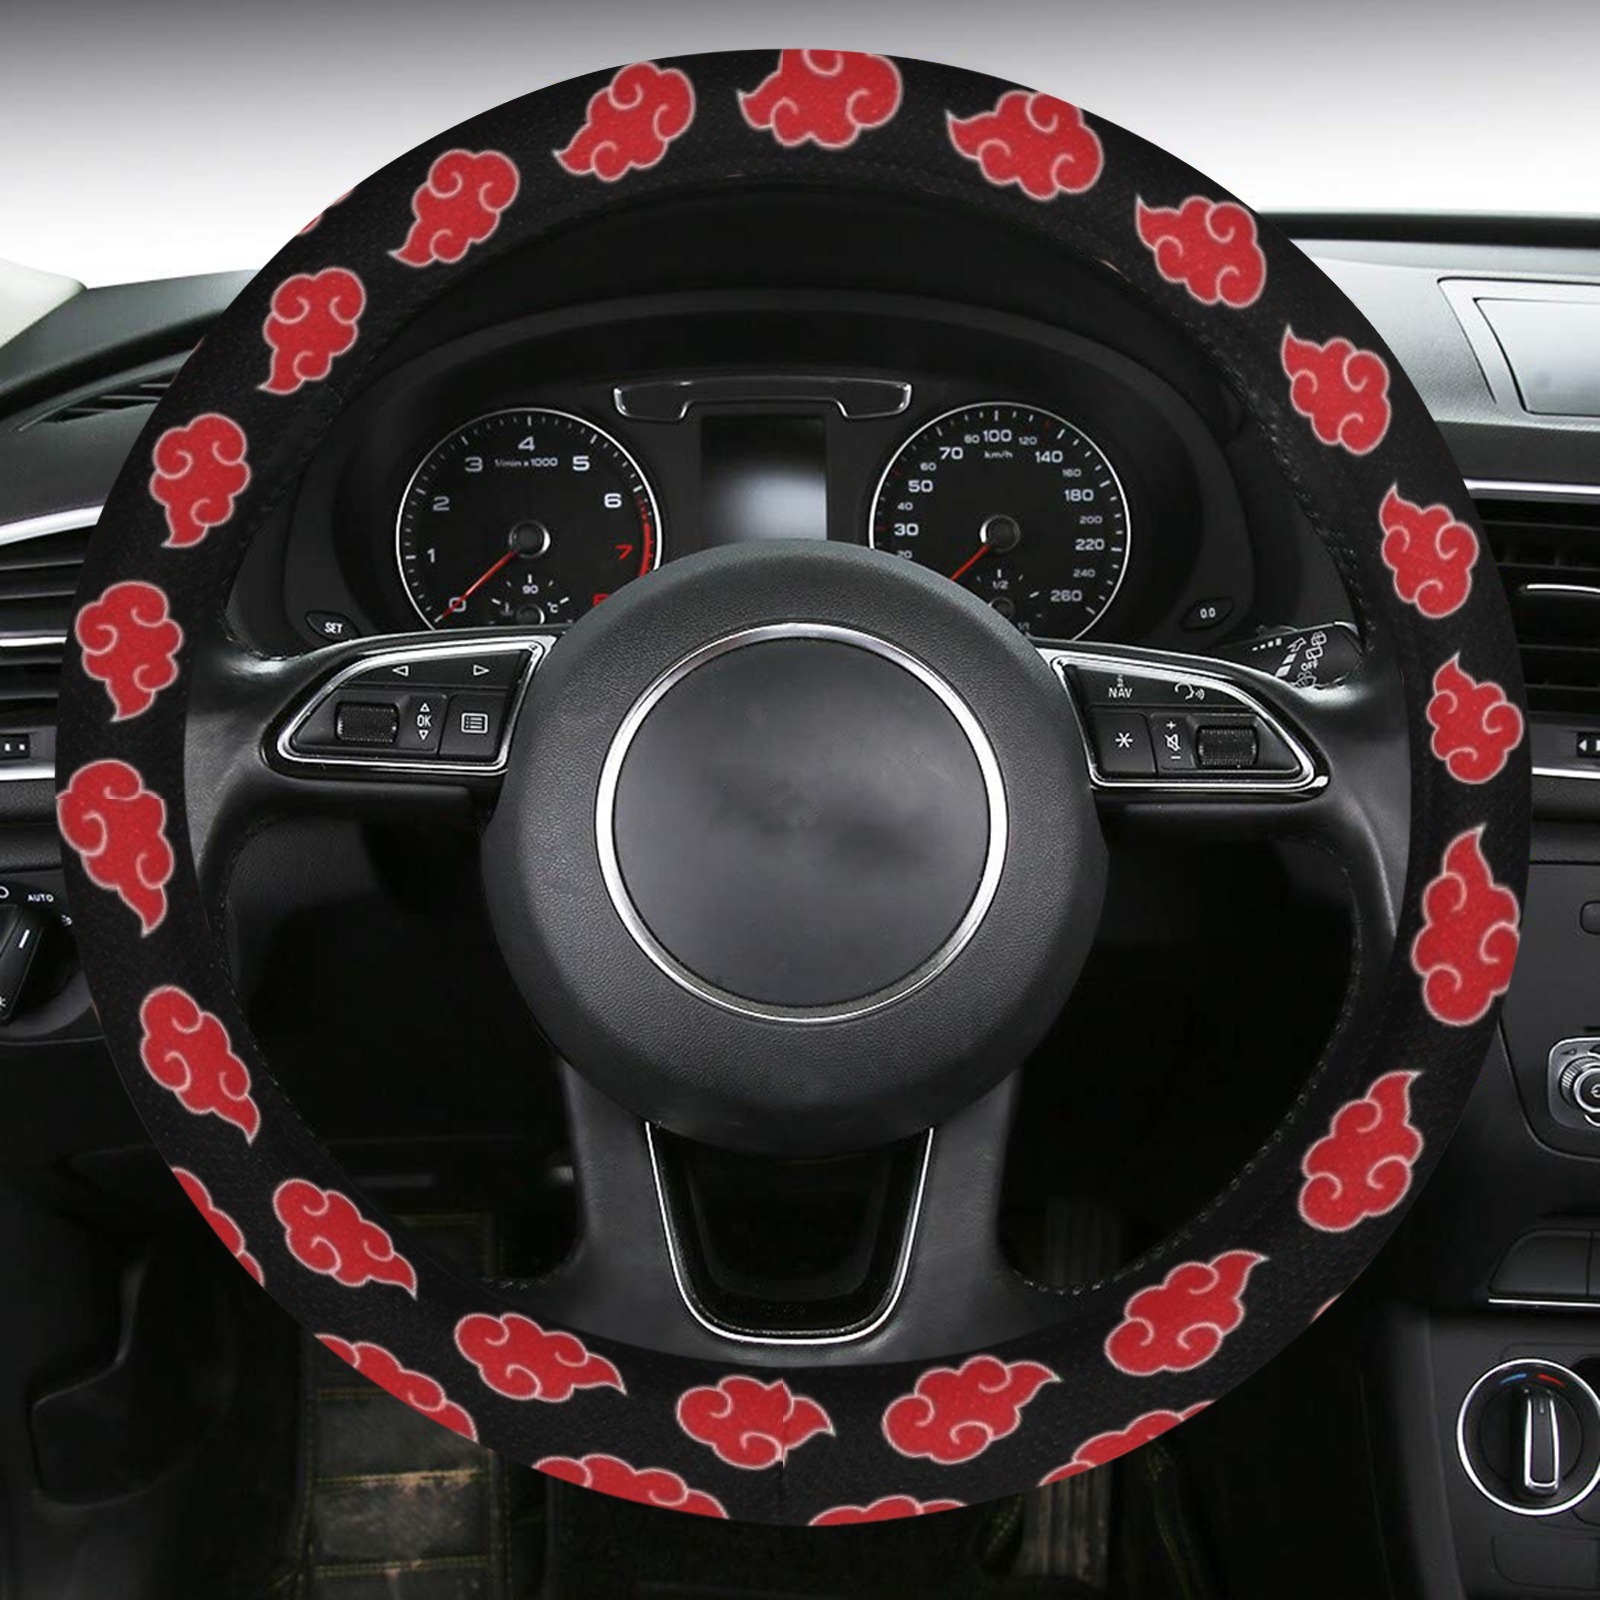 Akatsuki Steering Wheel Cover with Anti-Slip Insert